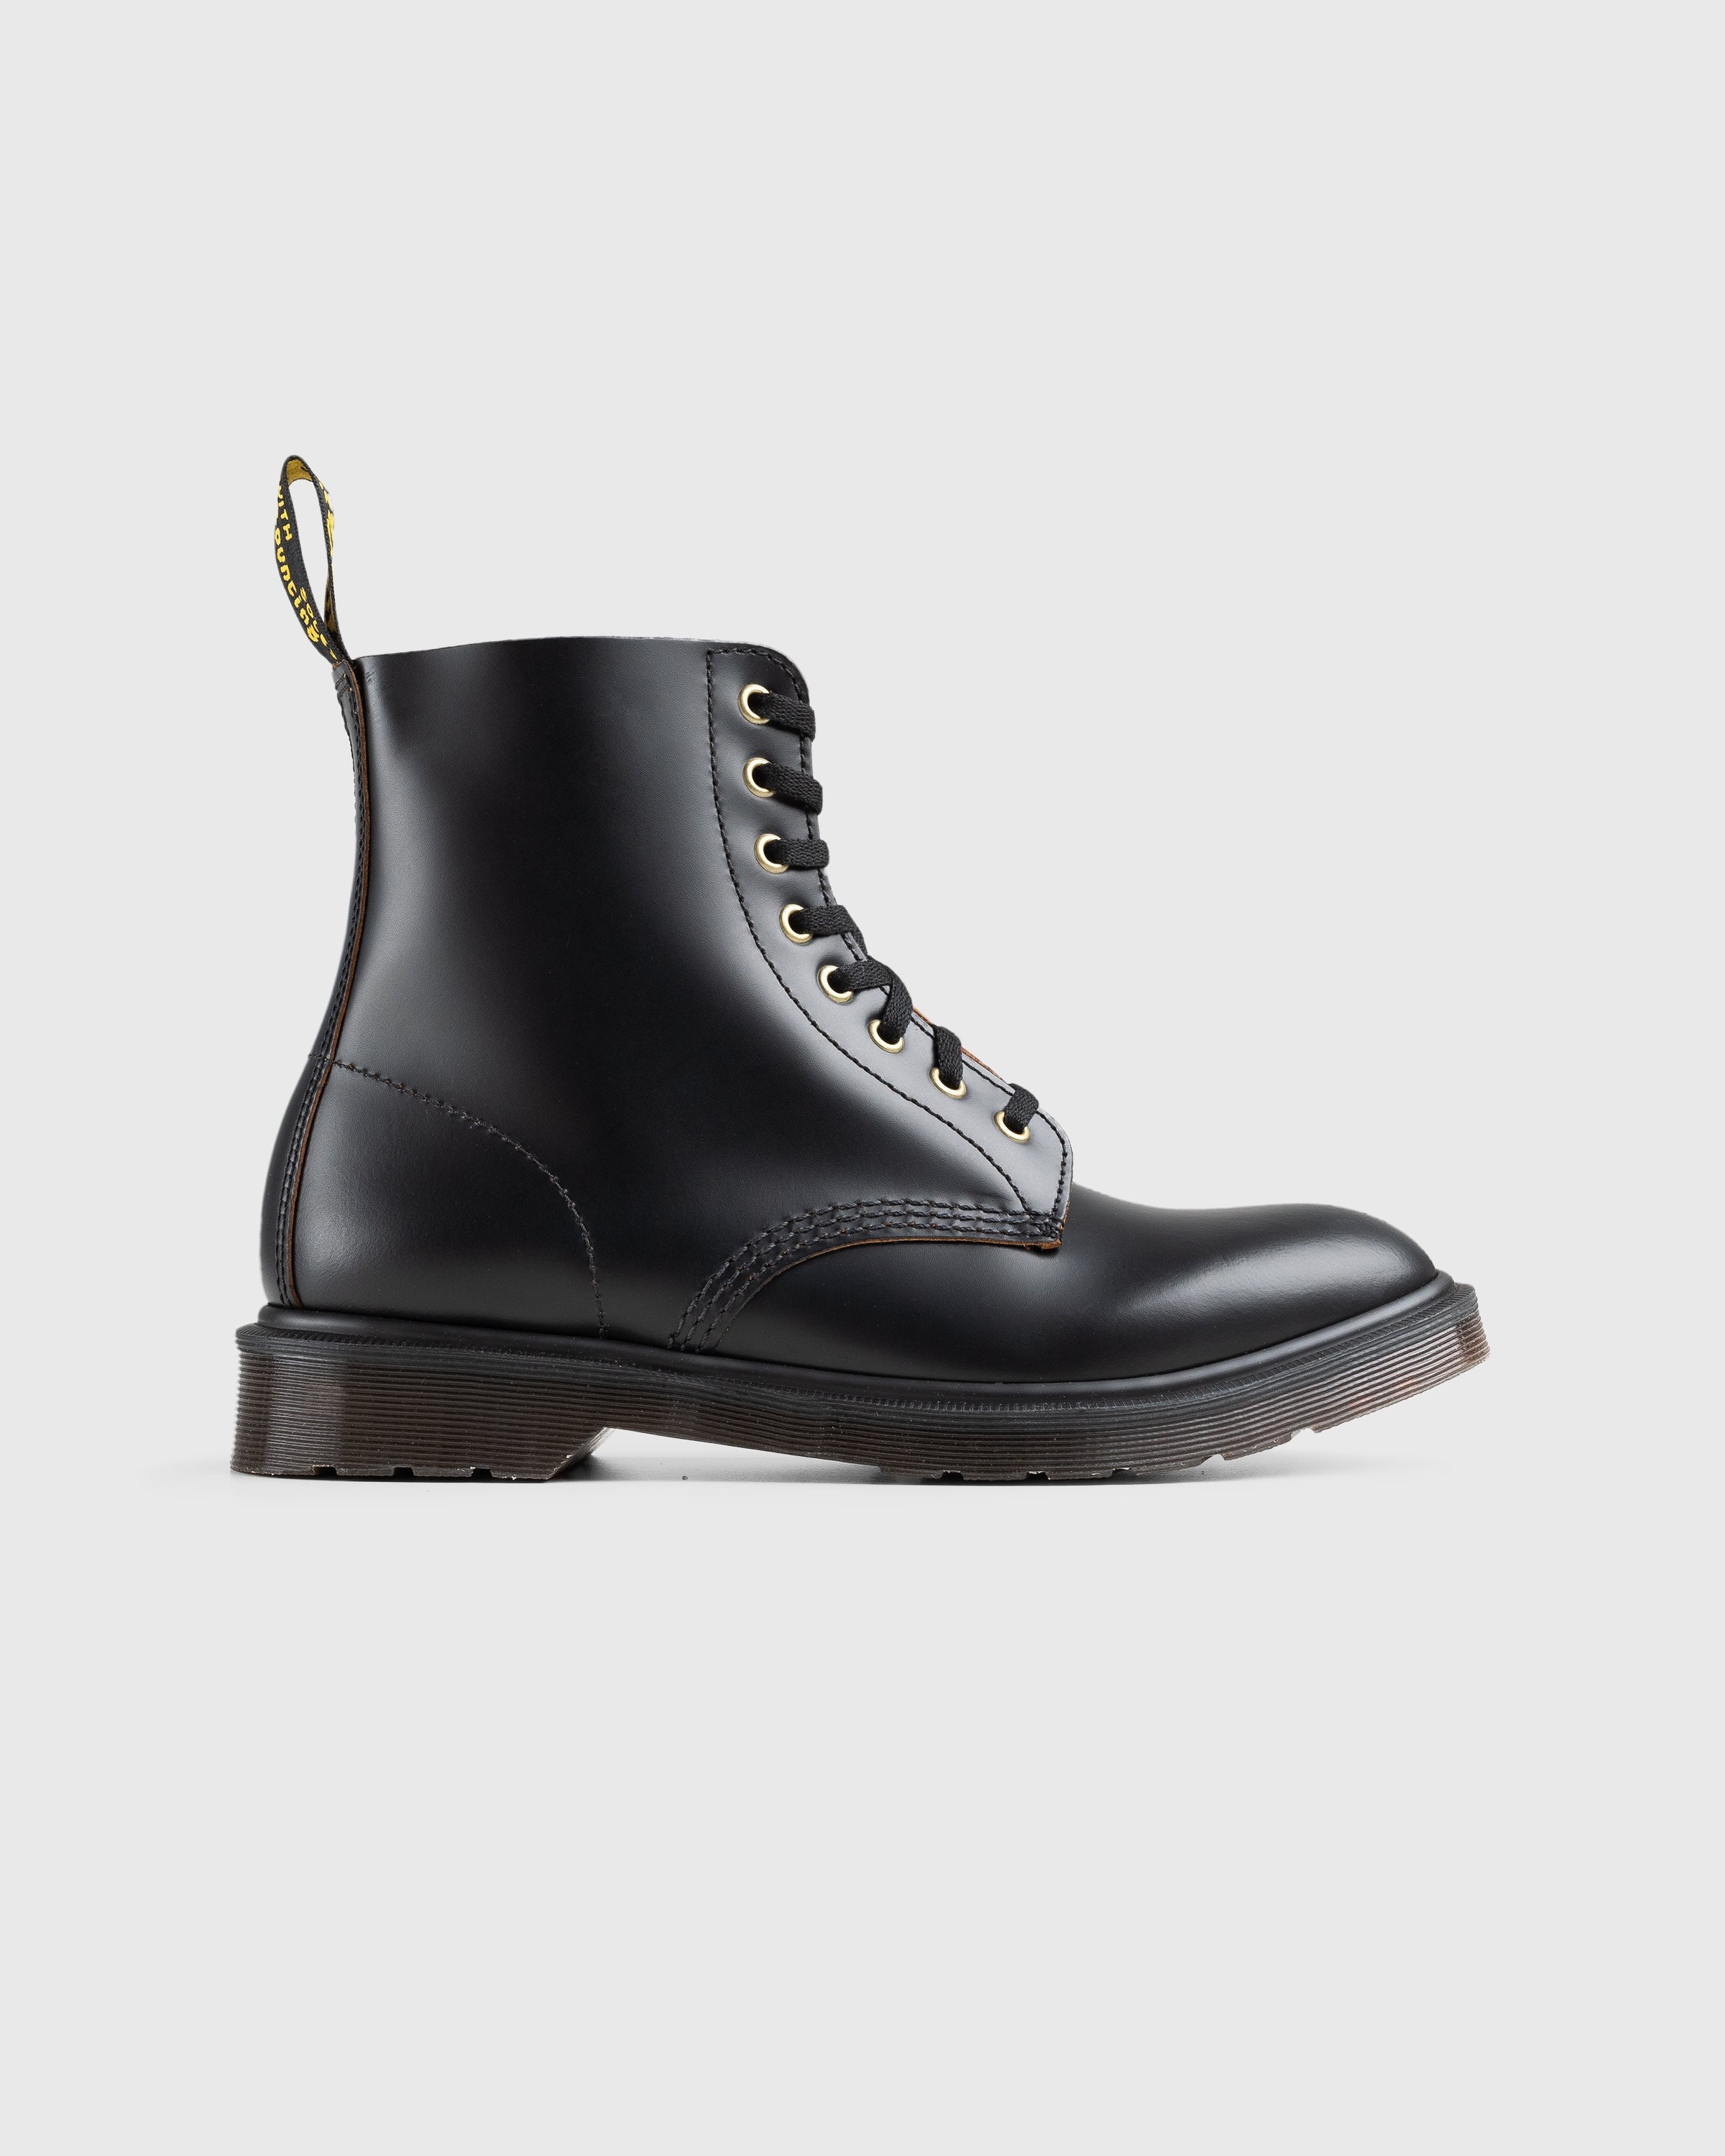 Dr. Martens – 1460 Vintage Smooth Black - Laced Up Boots - Black - Image 1